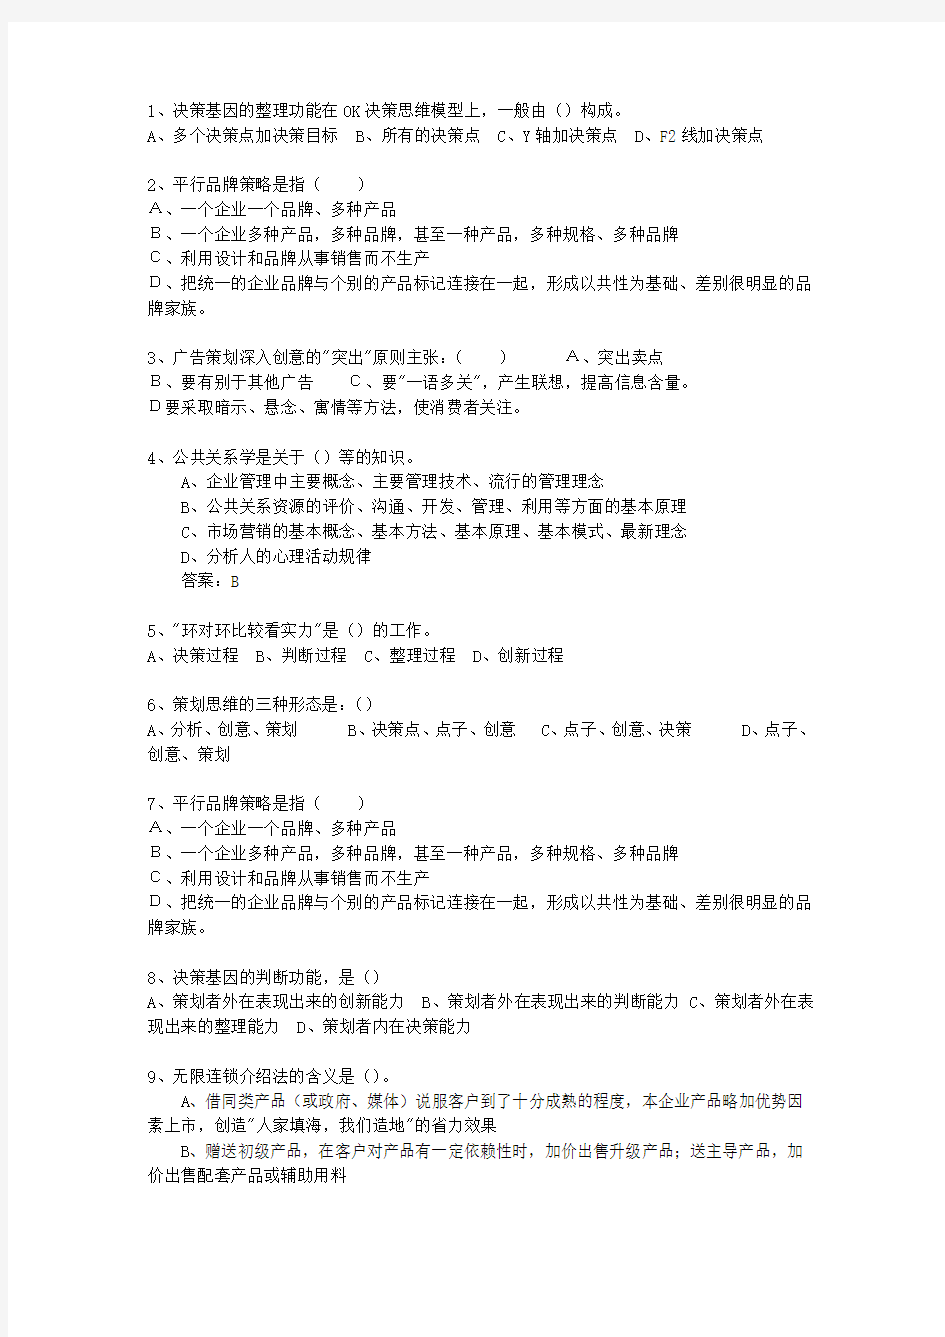 2010年黑龙江省初级商务策划师最新考试试题库(完整版)